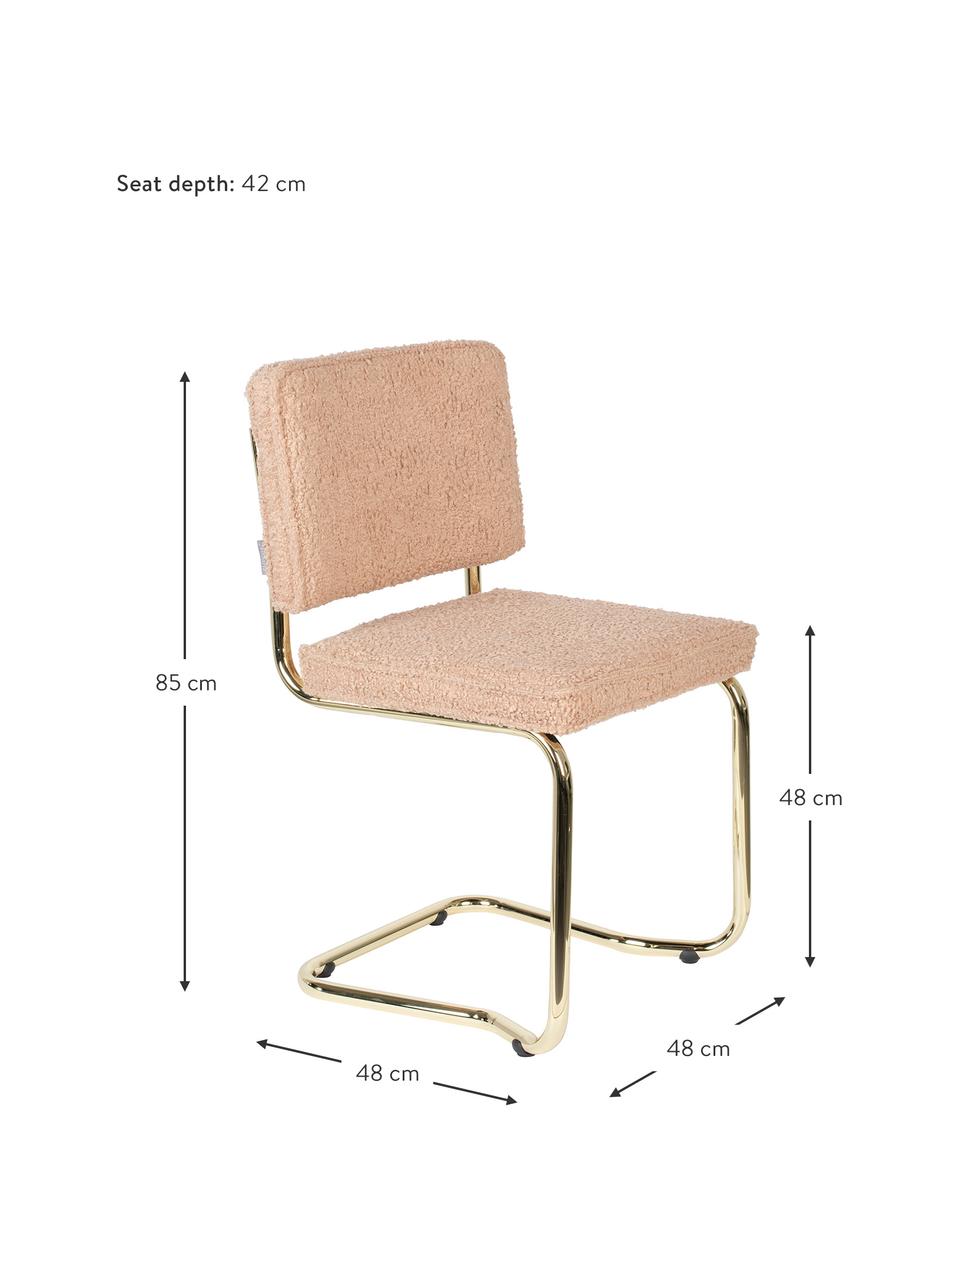 Houpací židle Teddy Kink, Růžová, mosazná, Š 48 cm, H 48 cm